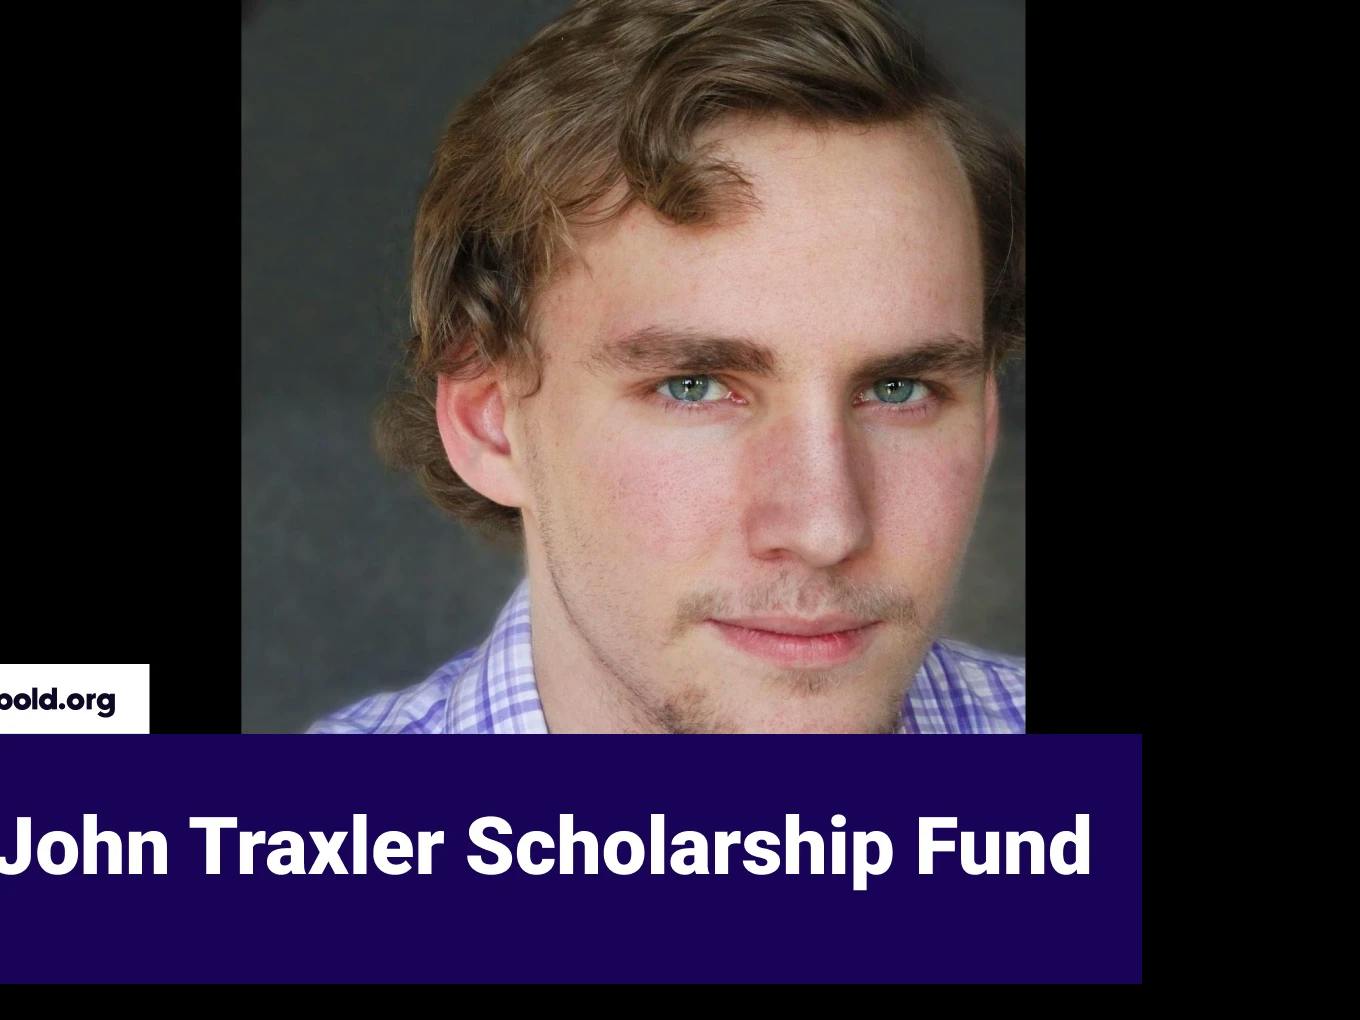 John Traxler Scholarship Fund